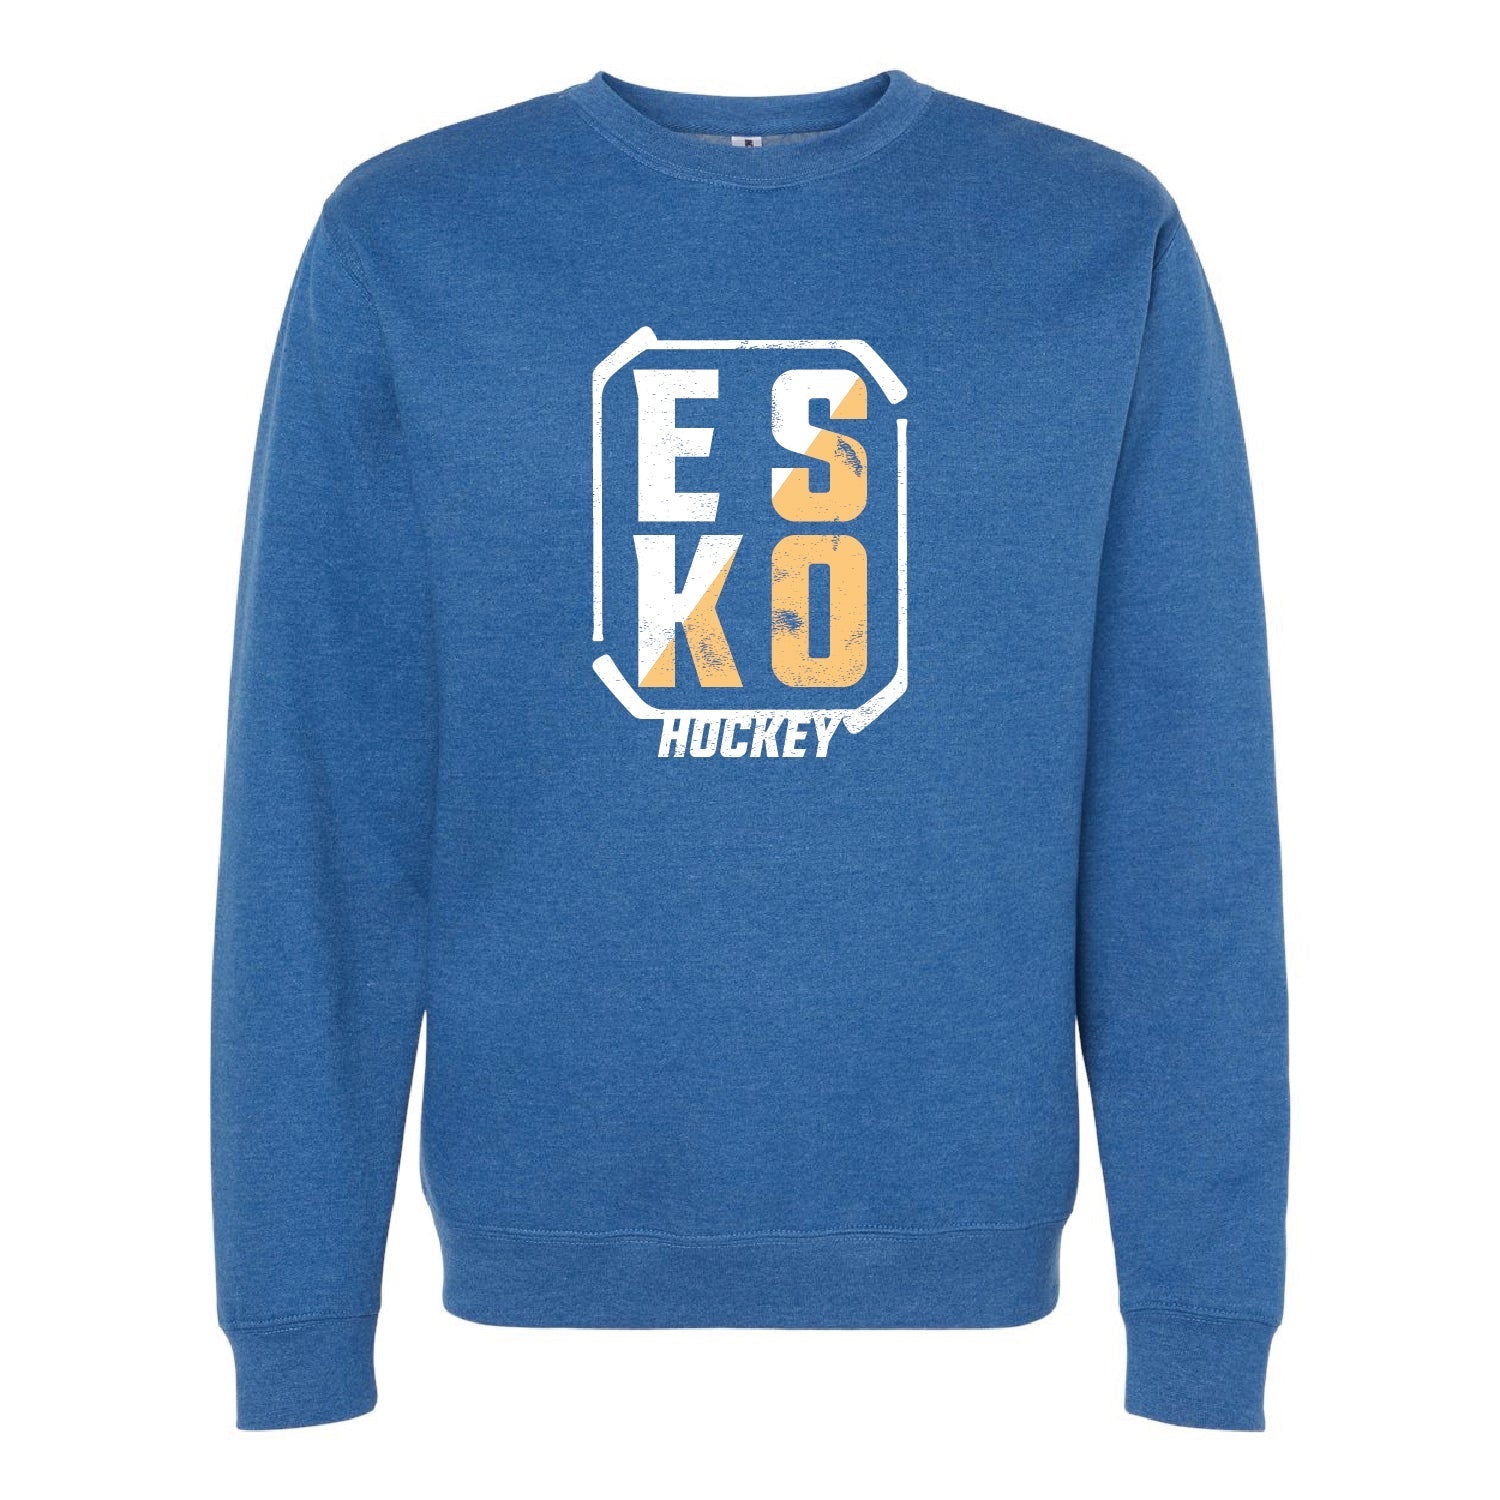 Esko Hockey Unisex Midweight Sweatshirt - DSP On Demand